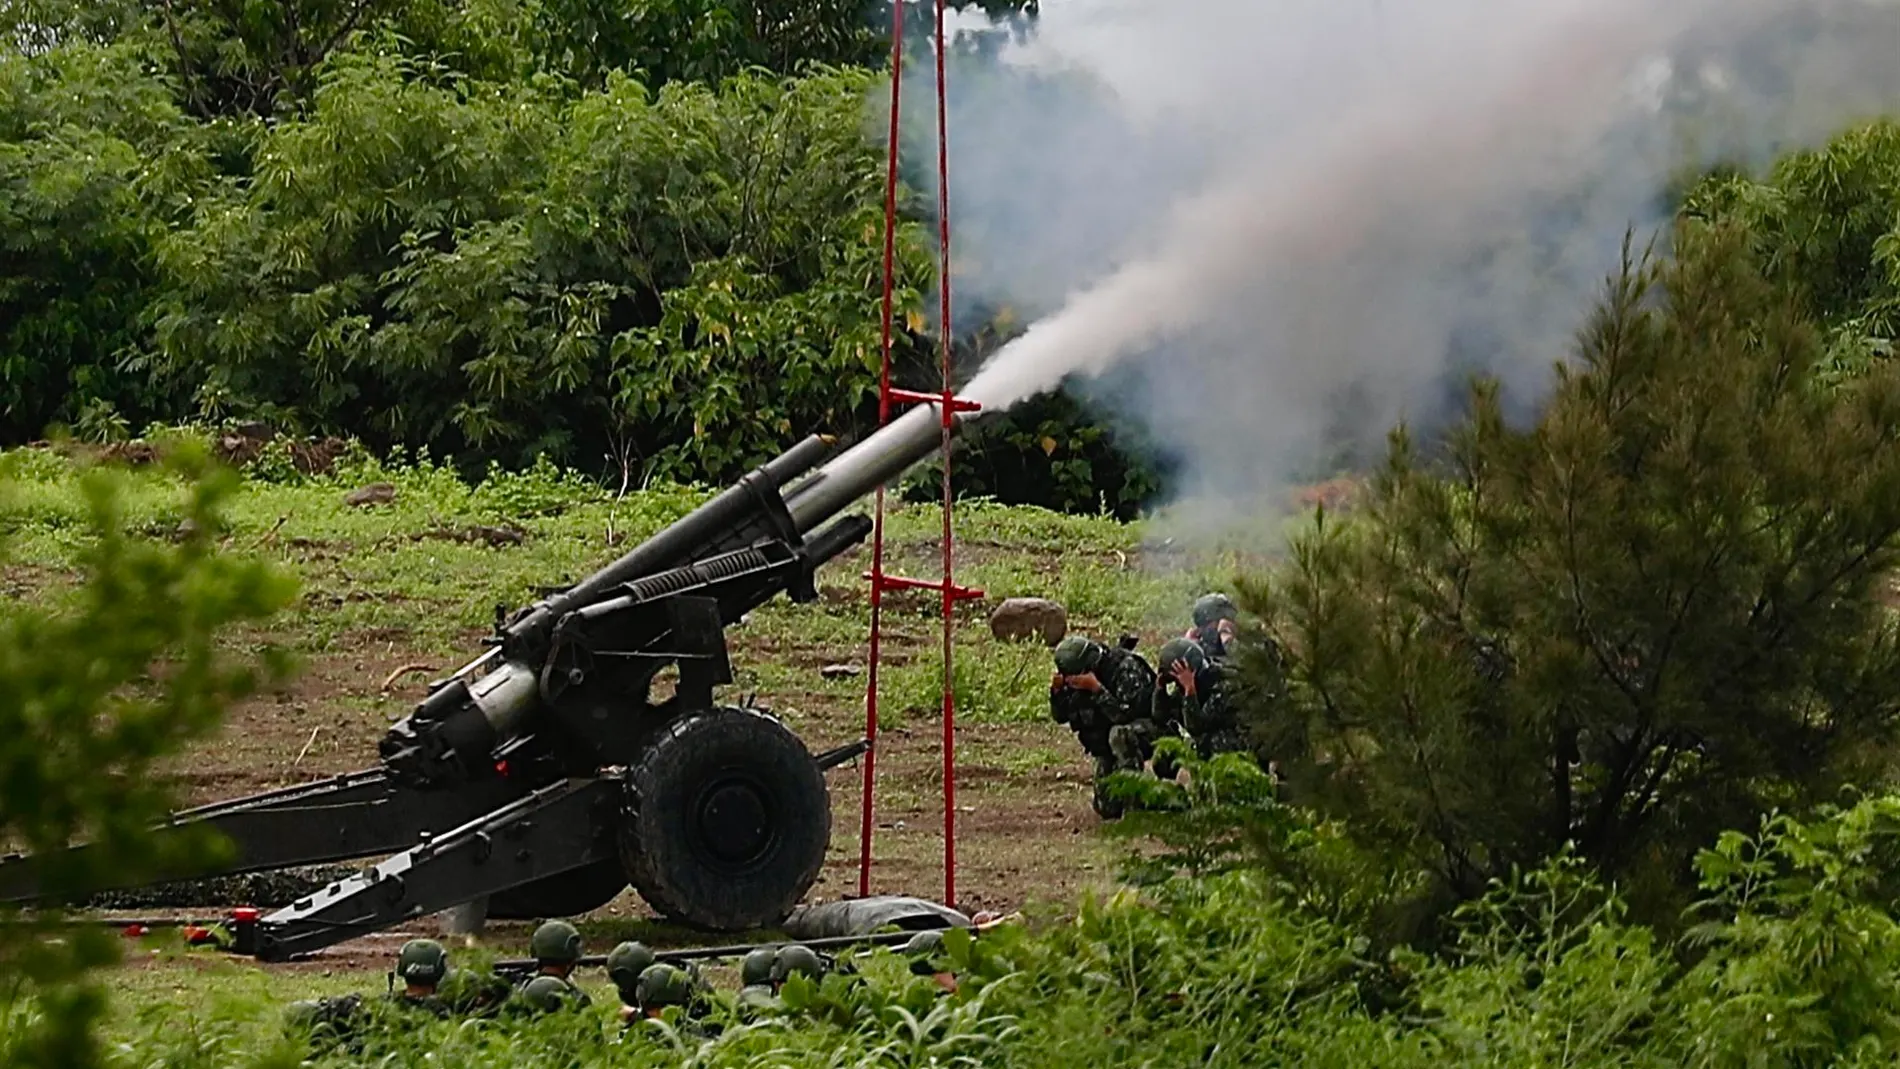 Fuego real de artillería en el simulacro defensivo de Taiwán